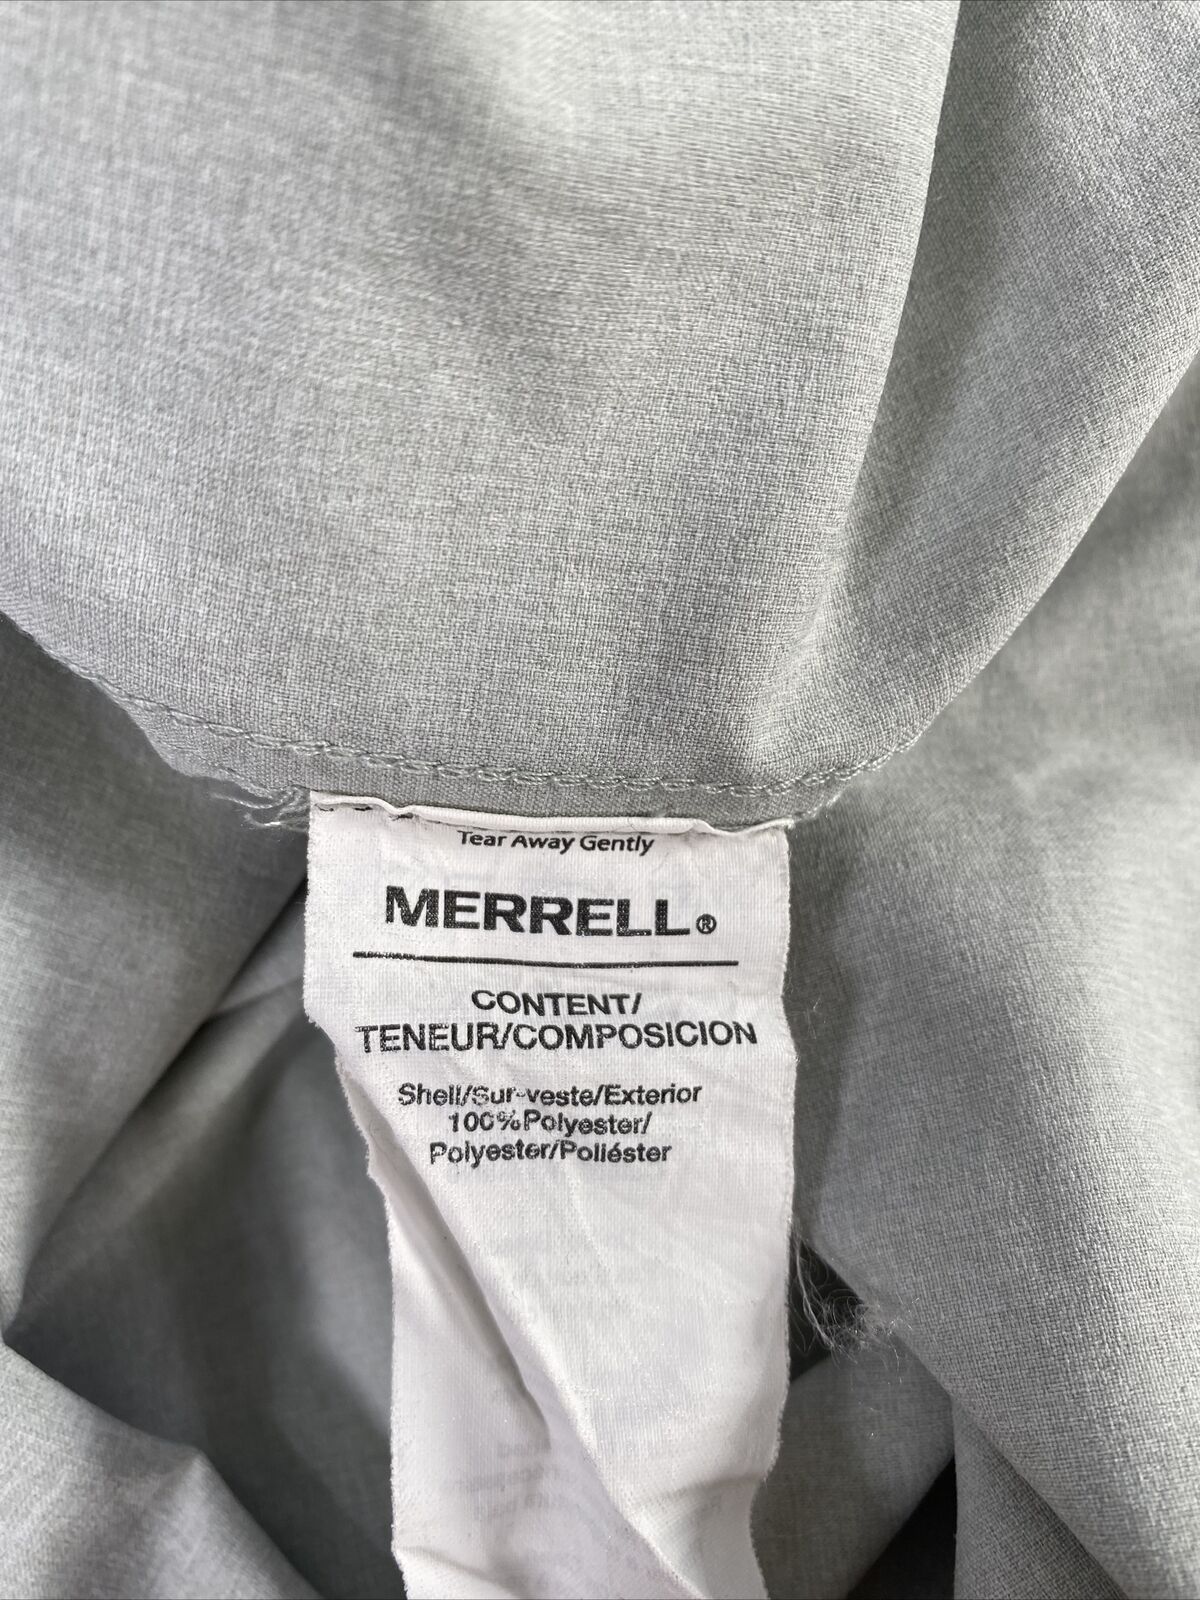 Merrell Men's Gray Long Sleeve Light Weight Casual Button Up Shirt - XL